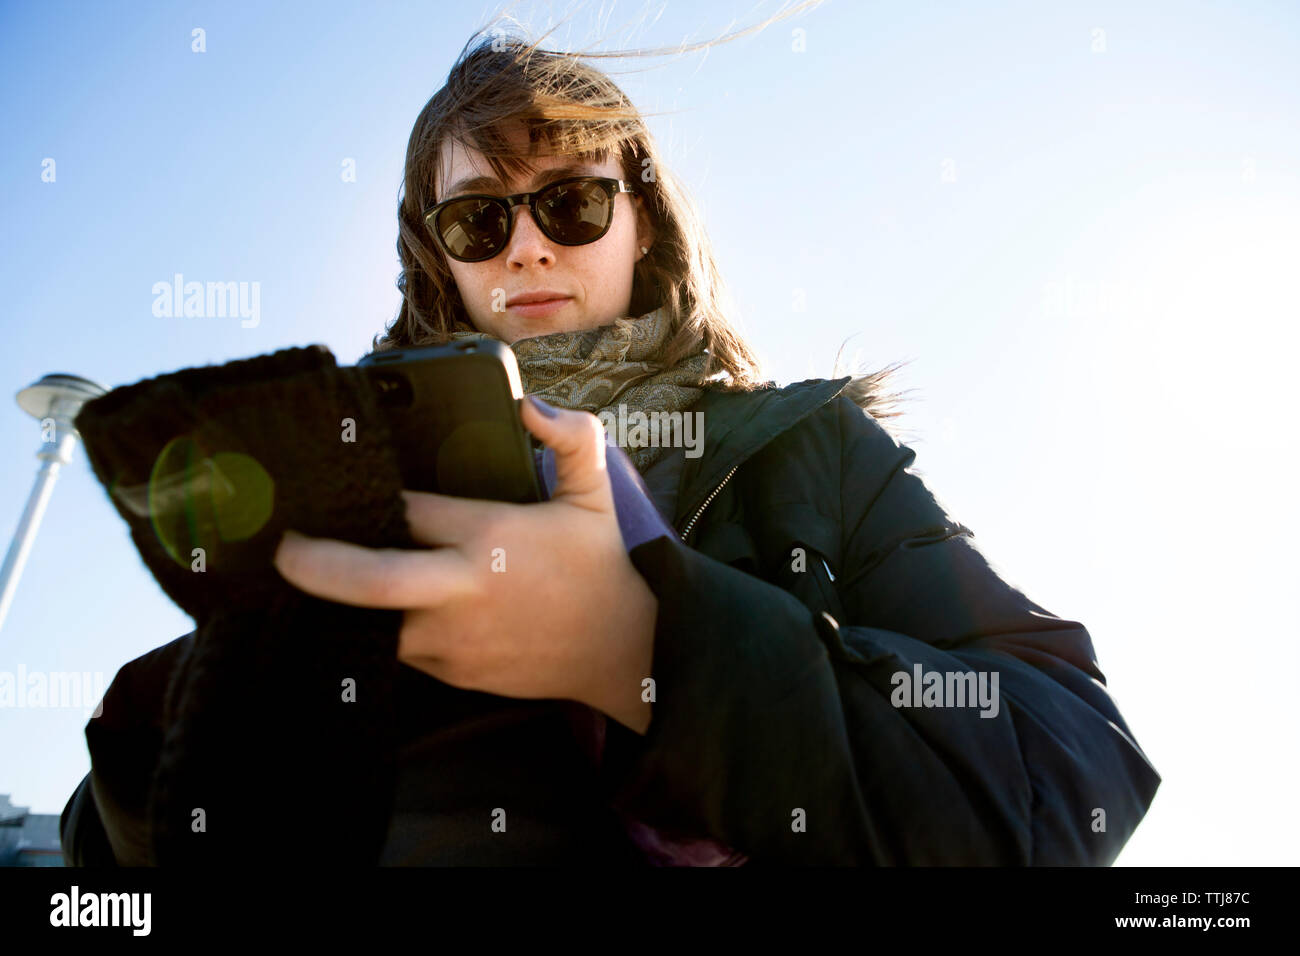 Basso angolo di visione della donna utilizzando smart phone mentre in piedi contro il cielo chiaro Foto Stock